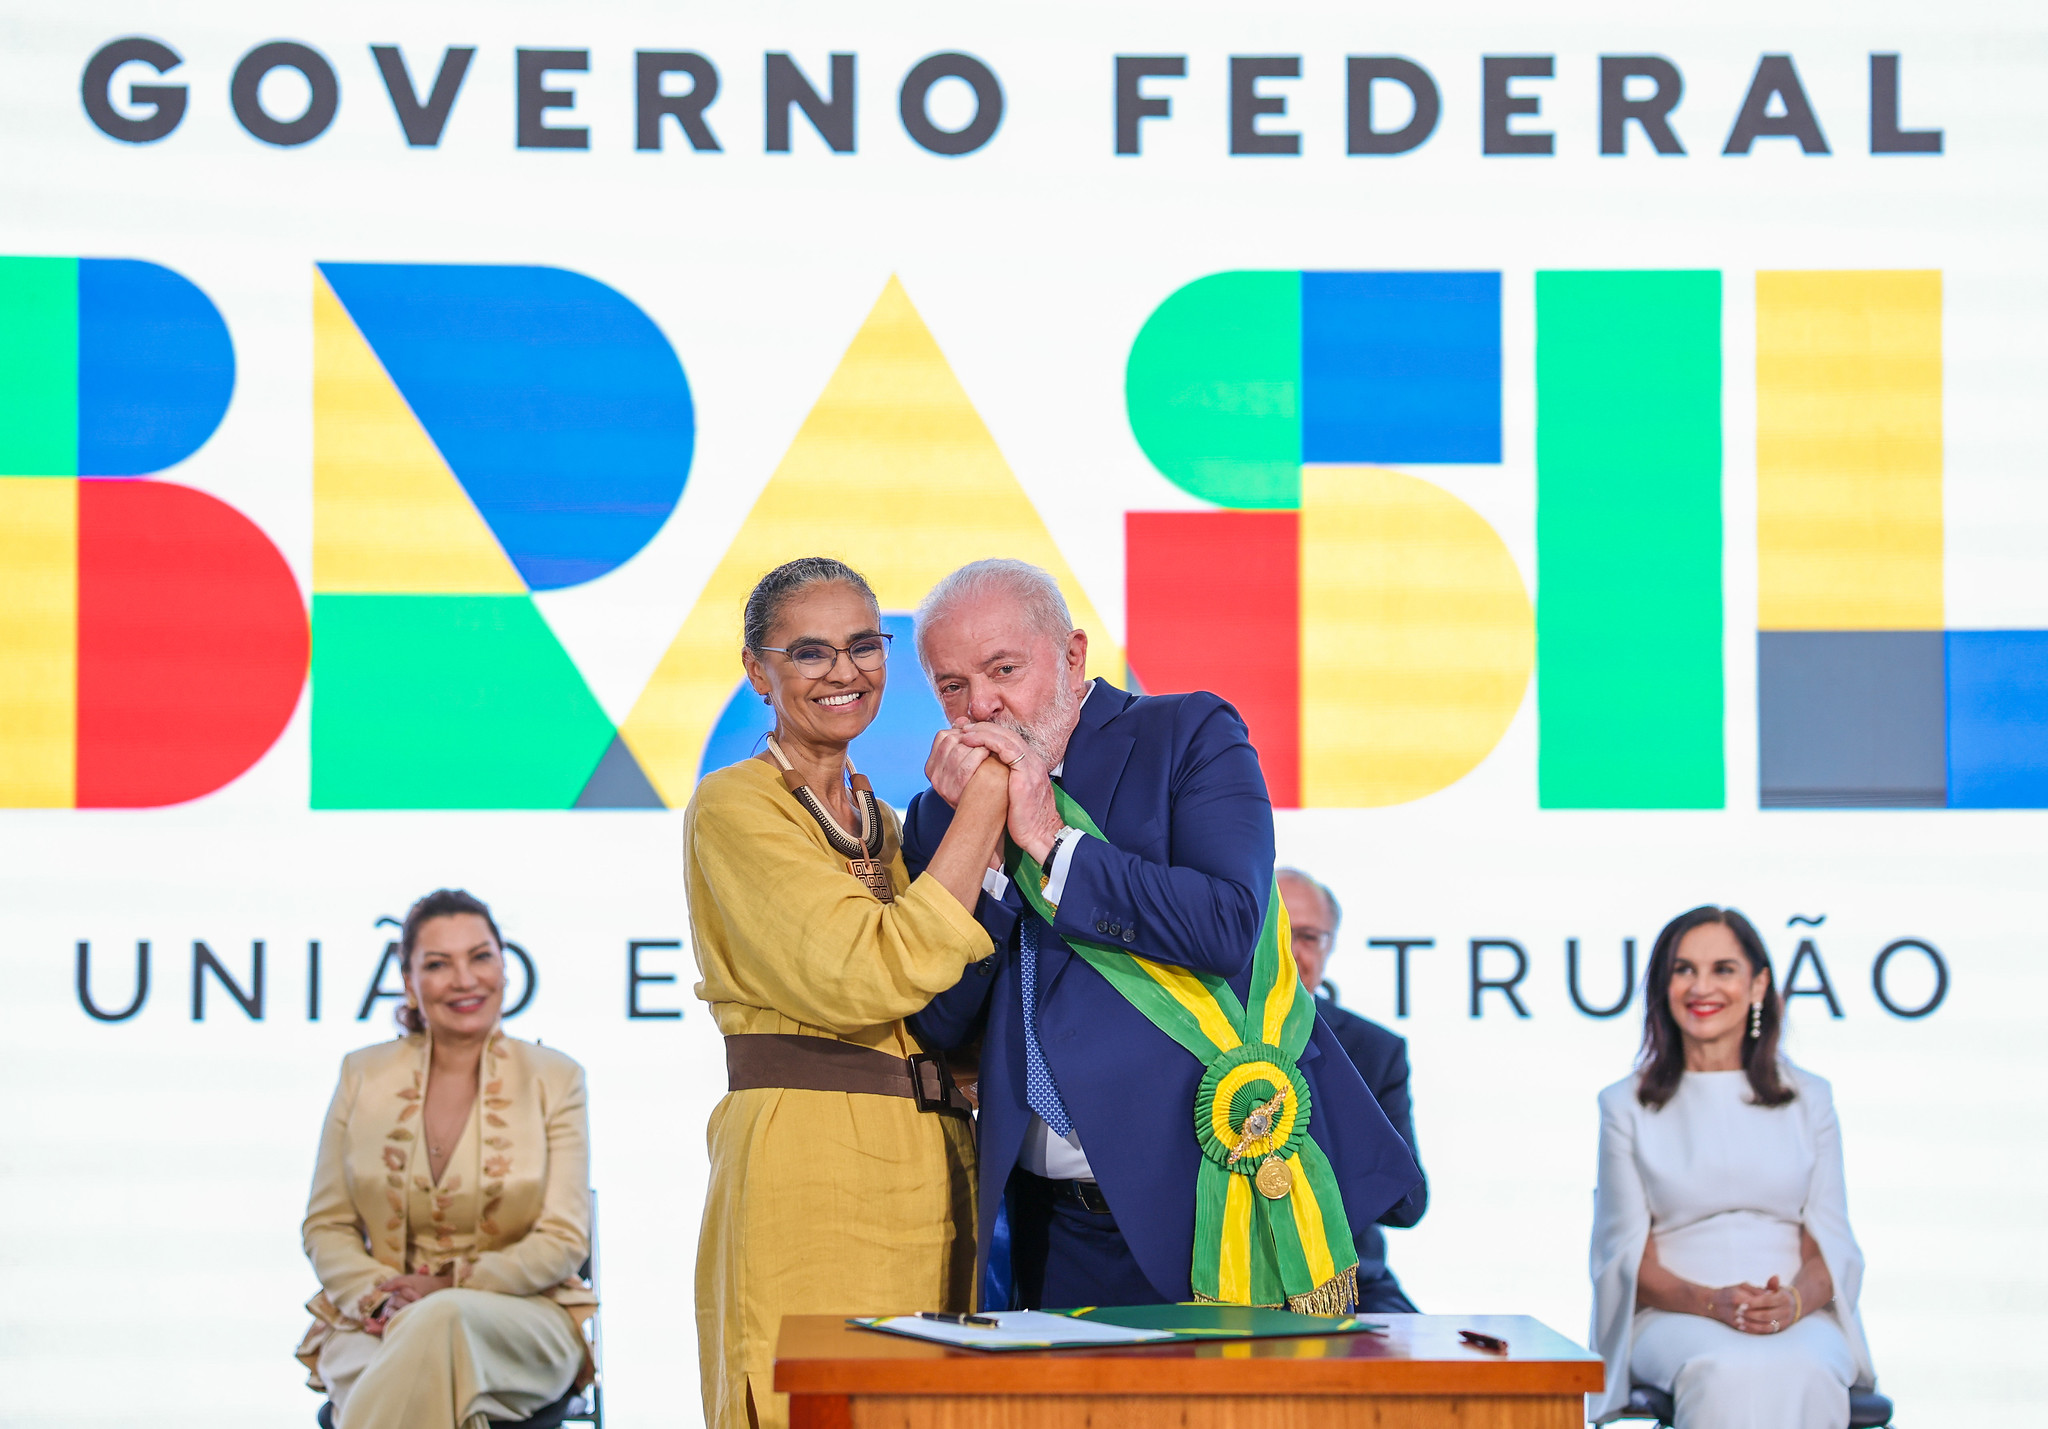 Desmatamento na Amazônia cai 61% em janeiro, registra Inpe. Na imagem: Ministra Marina Silva e presidente Lula assumem governo com discurso de "desmatamento zero" (Foto: Ricardo Stuckert/PR)